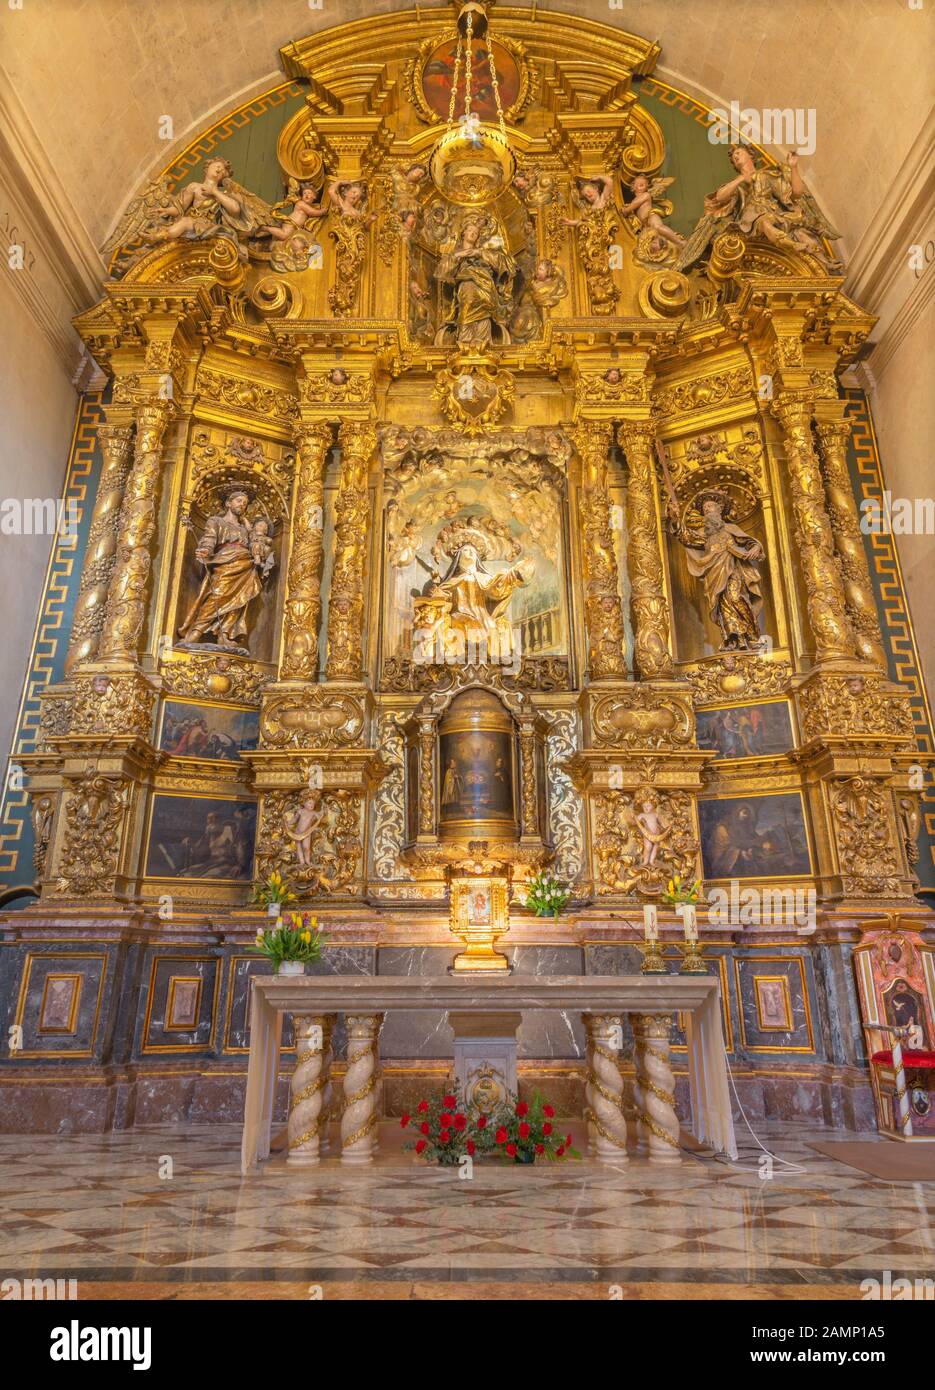 Palma DE MALLORCA, SPAGNA - 29 GENNAIO 2019: L'altare maggiore barocco con la statua di Santa Teresa d'Avila nella chiesa Iglesia de Santa Maria Magdal Foto Stock